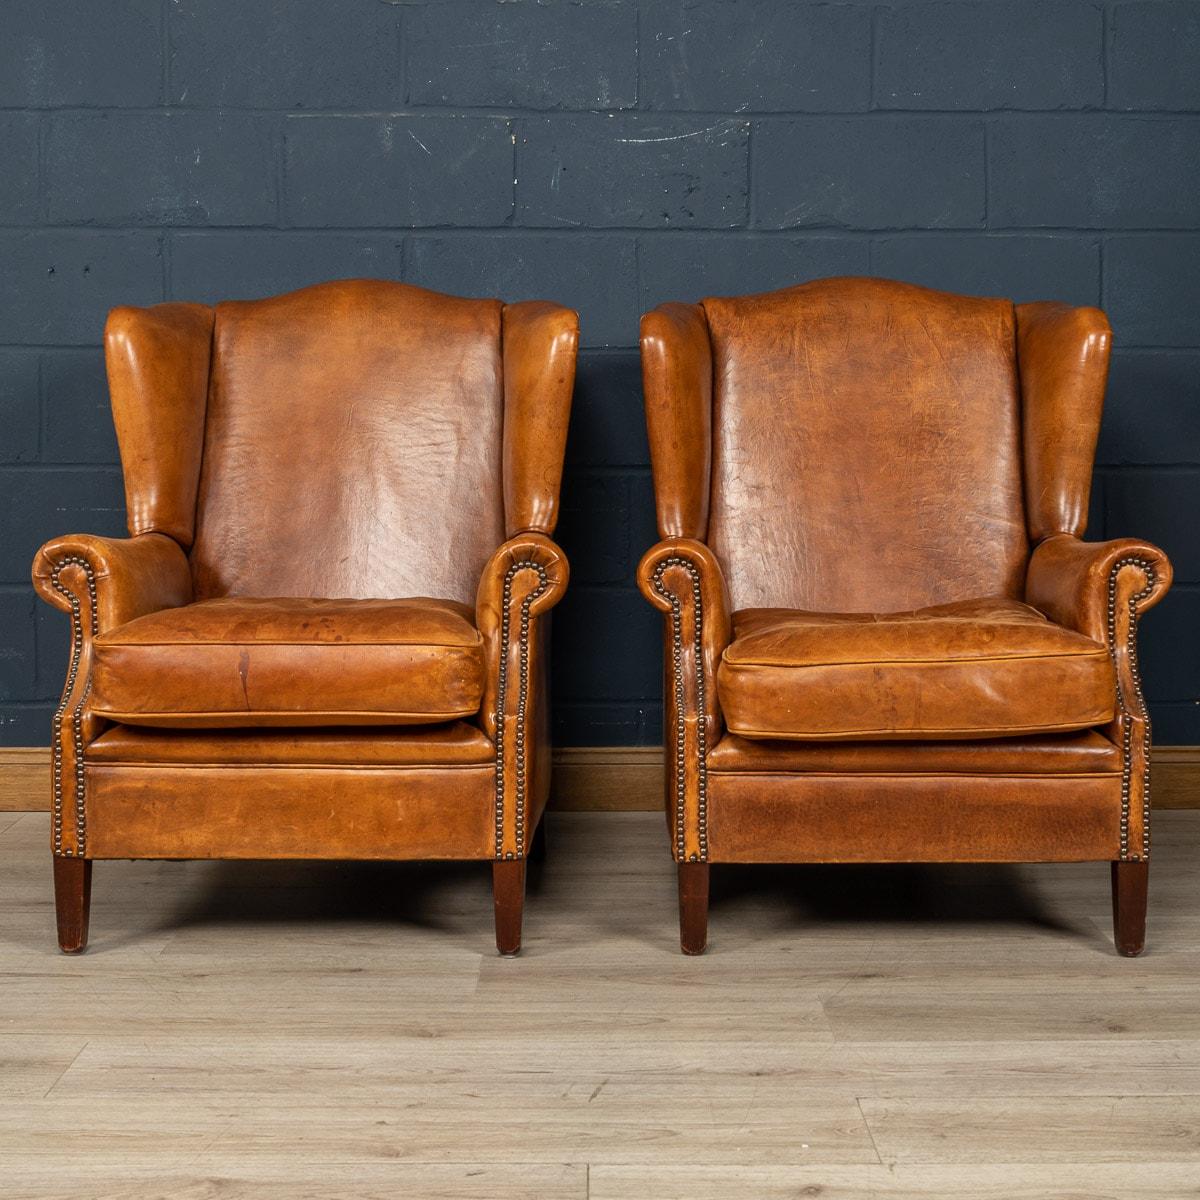 Ein wunderbares Paar lederne Ohrensessel. Die Stühle stammen aus der zweiten Hälfte des 20. Jahrhunderts und wurden von den besten niederländischen Handwerkern gefertigt, wobei der Massivholzrahmen mit hochwertigem, honigfarbenem Schafsleder